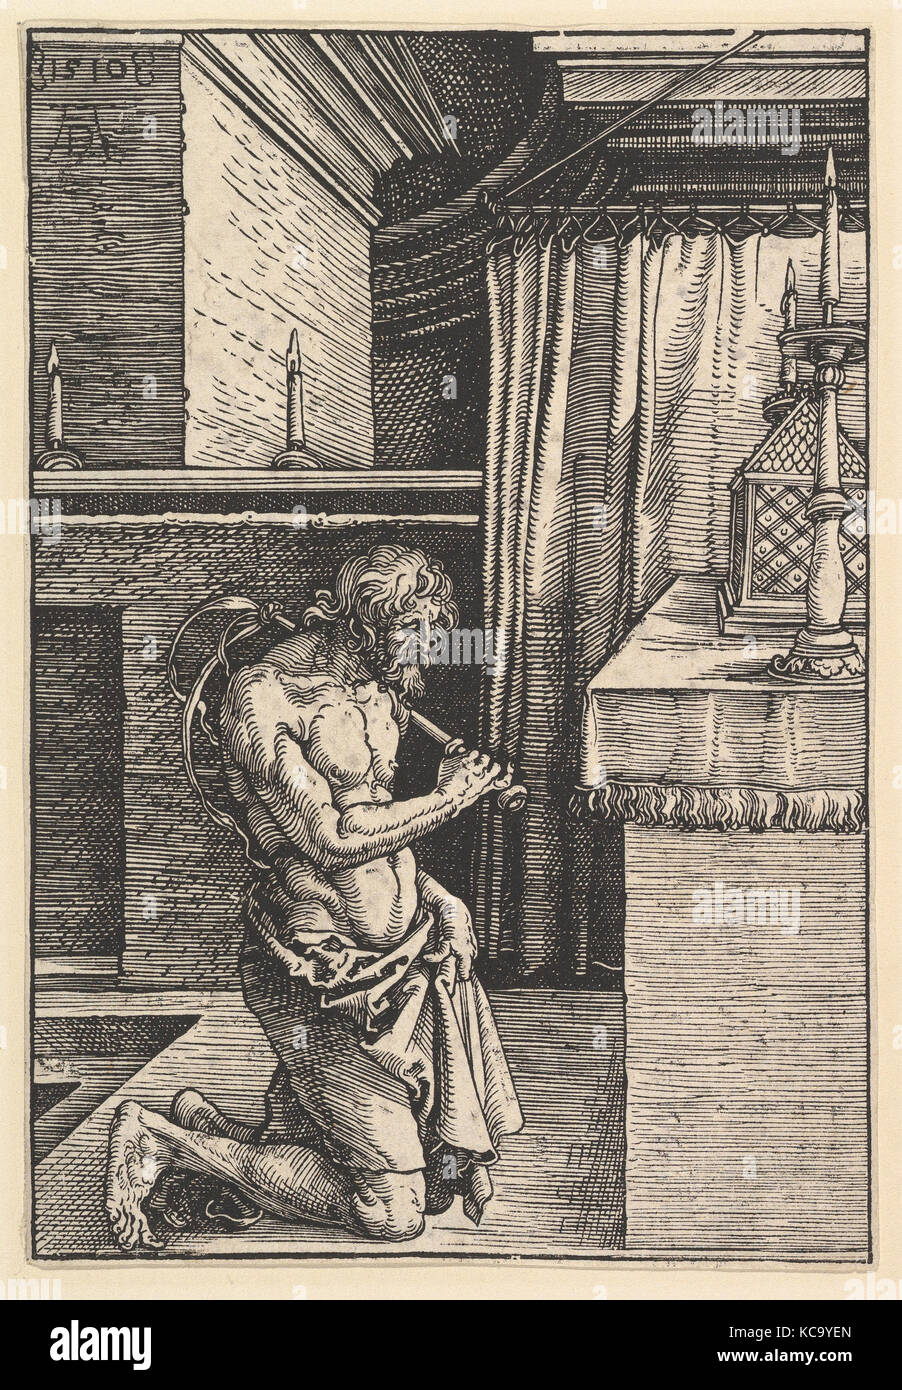 Le pénitent, 1510, gravure sur bois, feuille : 7 3/4 x 5 1/4 in. (19,7 x 13,3 cm), Impressions, Albrecht Dürer (Nuremberg, Allemagne 1471-1528 Banque D'Images